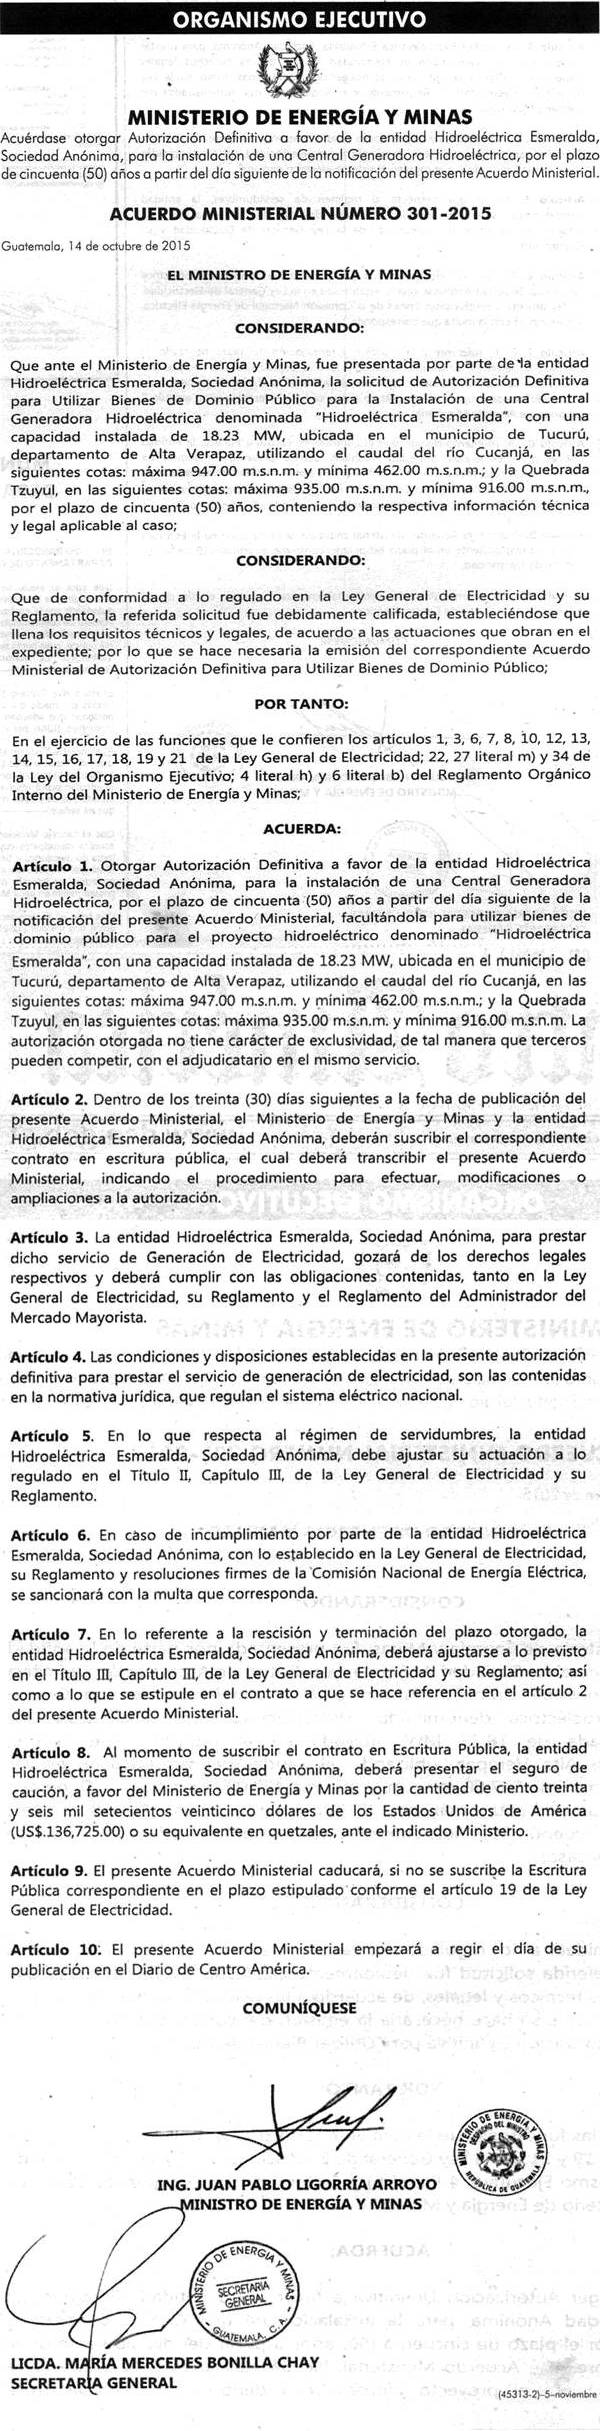 Acuerdo Ministerial 301-2015